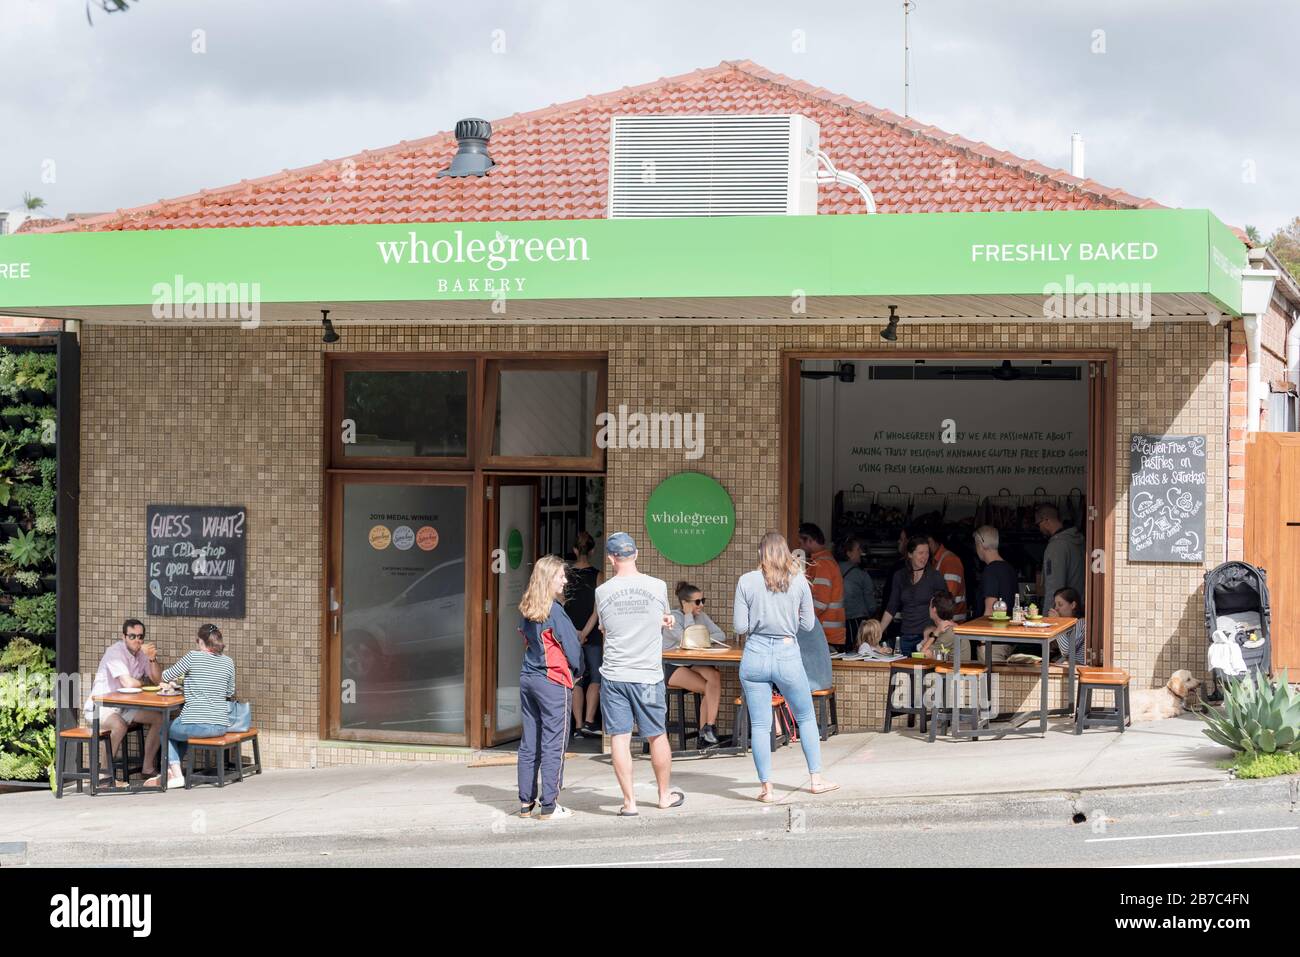 Die Leute warten und essen außerhalb der Wholegreen Bakery in Sydney, Australien, Vorort von Waverly. Wholegreen ist ein völlig glutenfreier Bäcker und Lieferant. Stockfoto